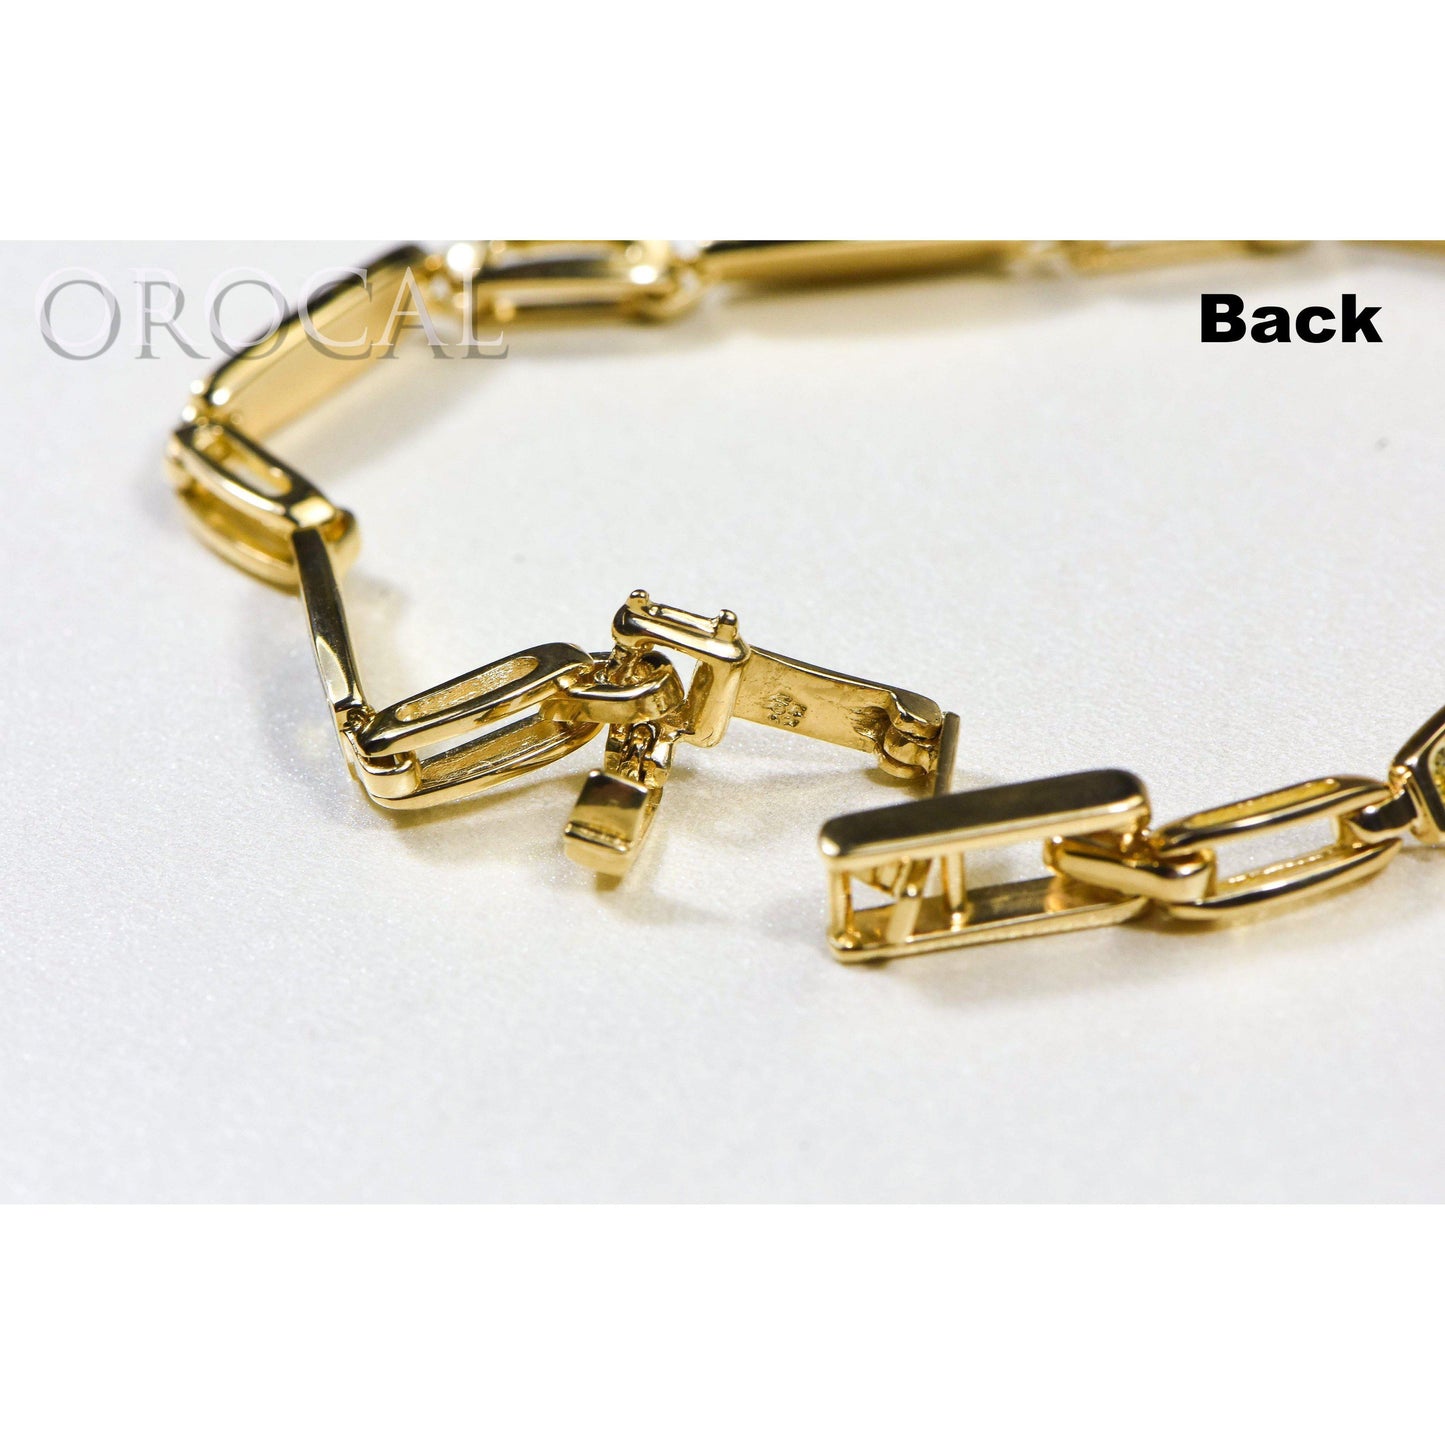 Gold Quartz Bracelet - BDLOV5MMNQC59-Destination Gold Detectors